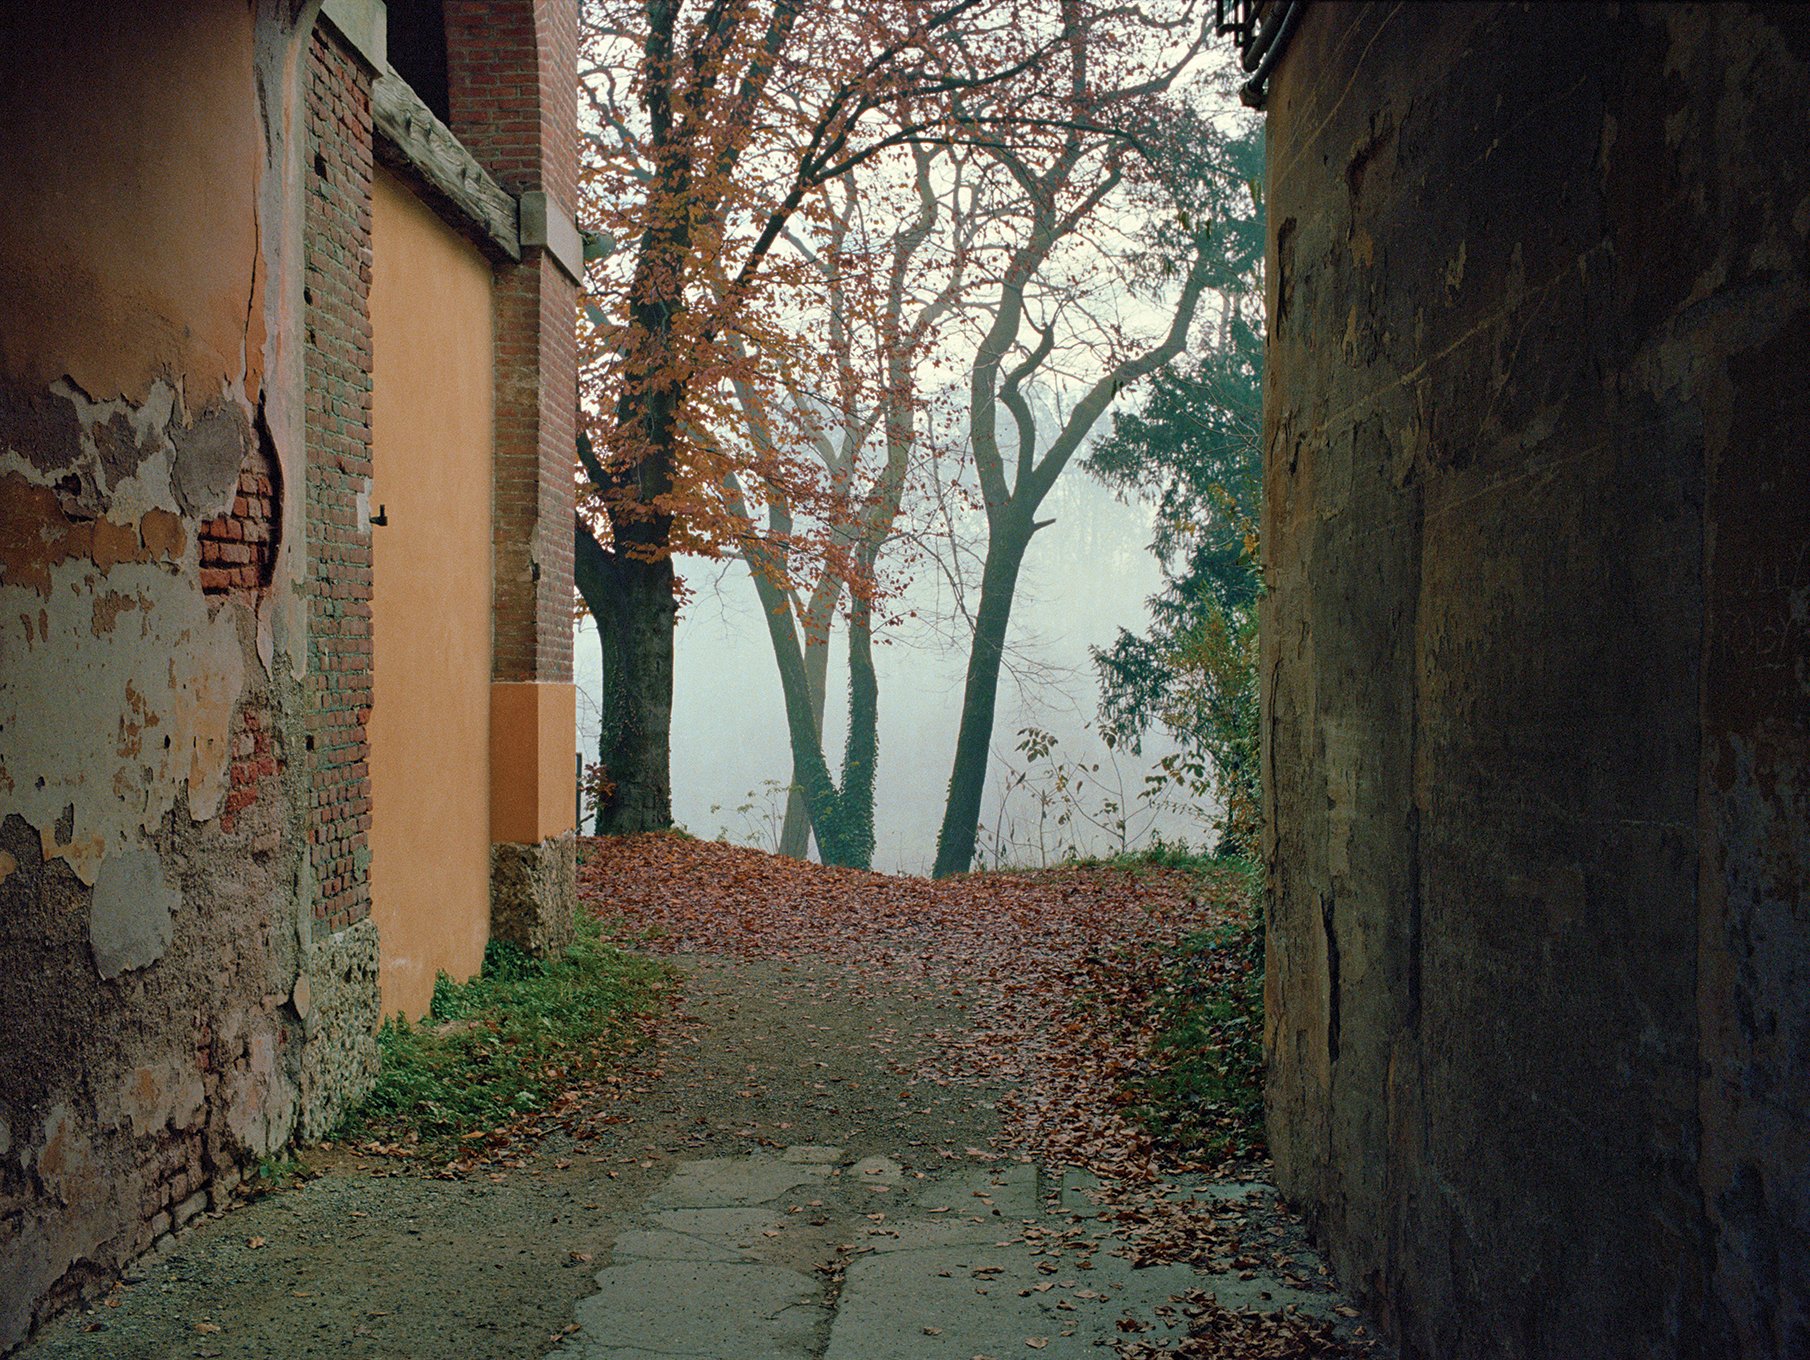   Autumn view from the porch  near Villa Mirabello, November 2020  